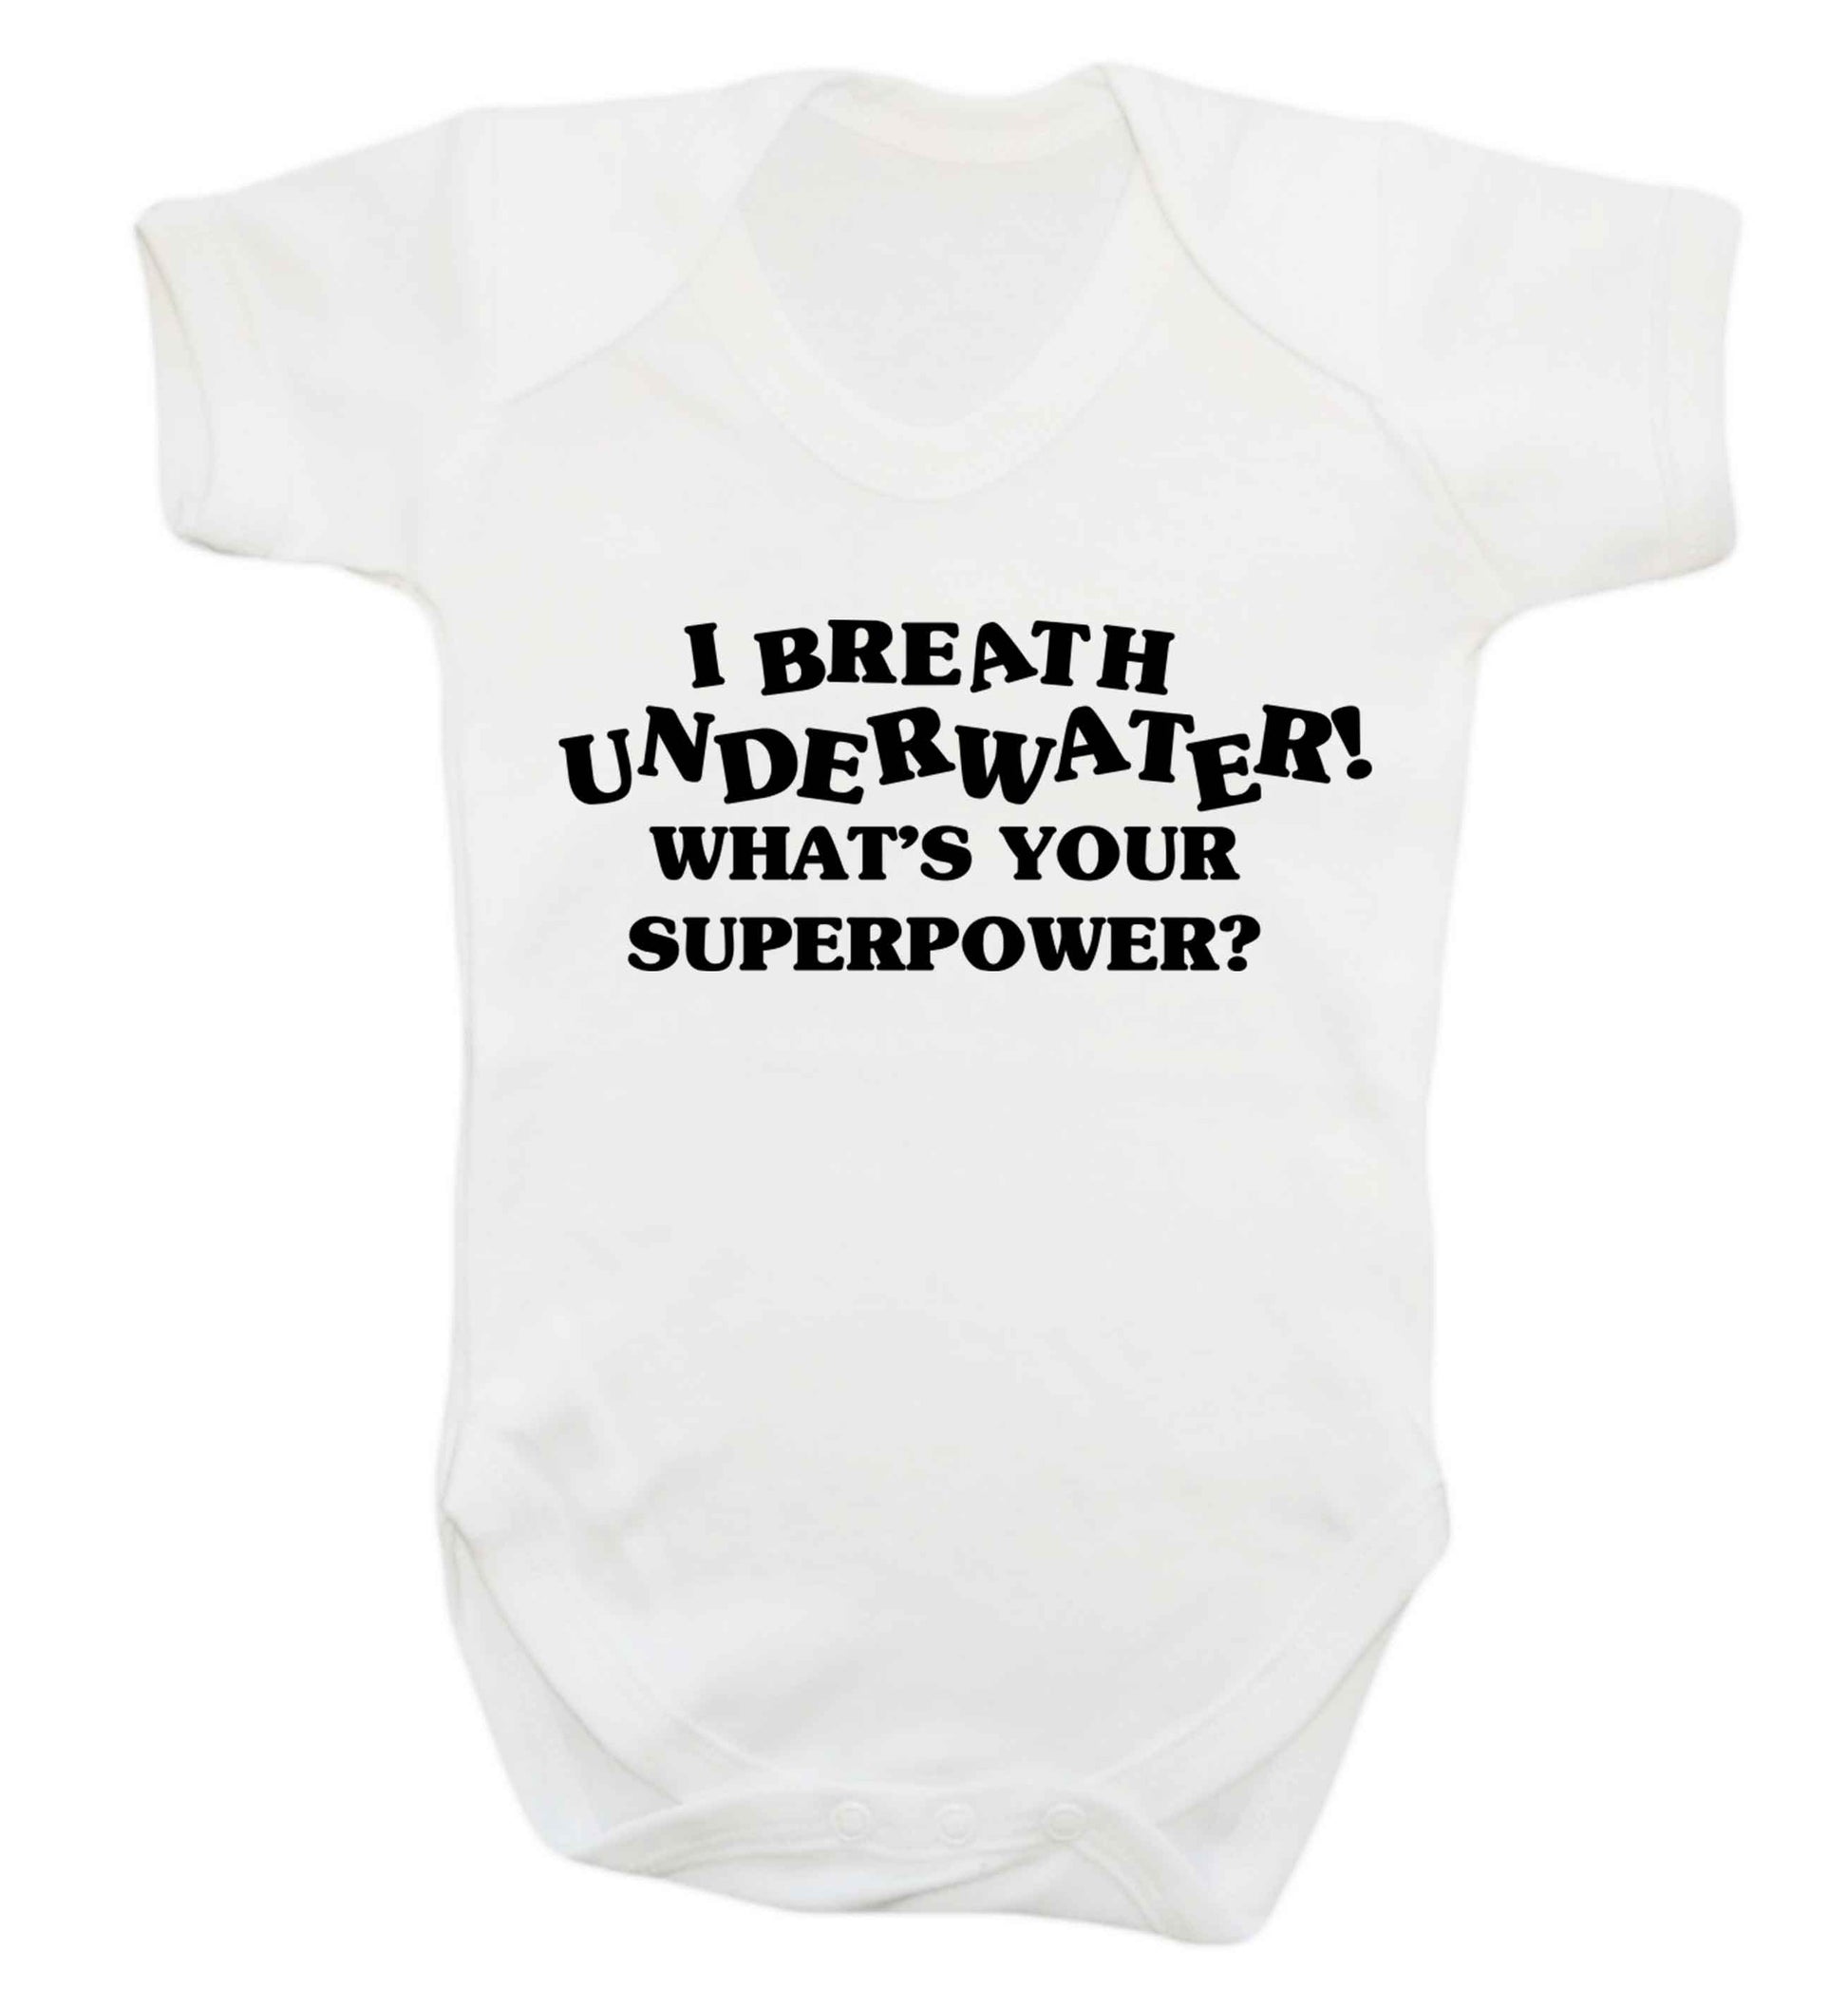 I breath underwater what's your superpower? Baby Vest white 18-24 months